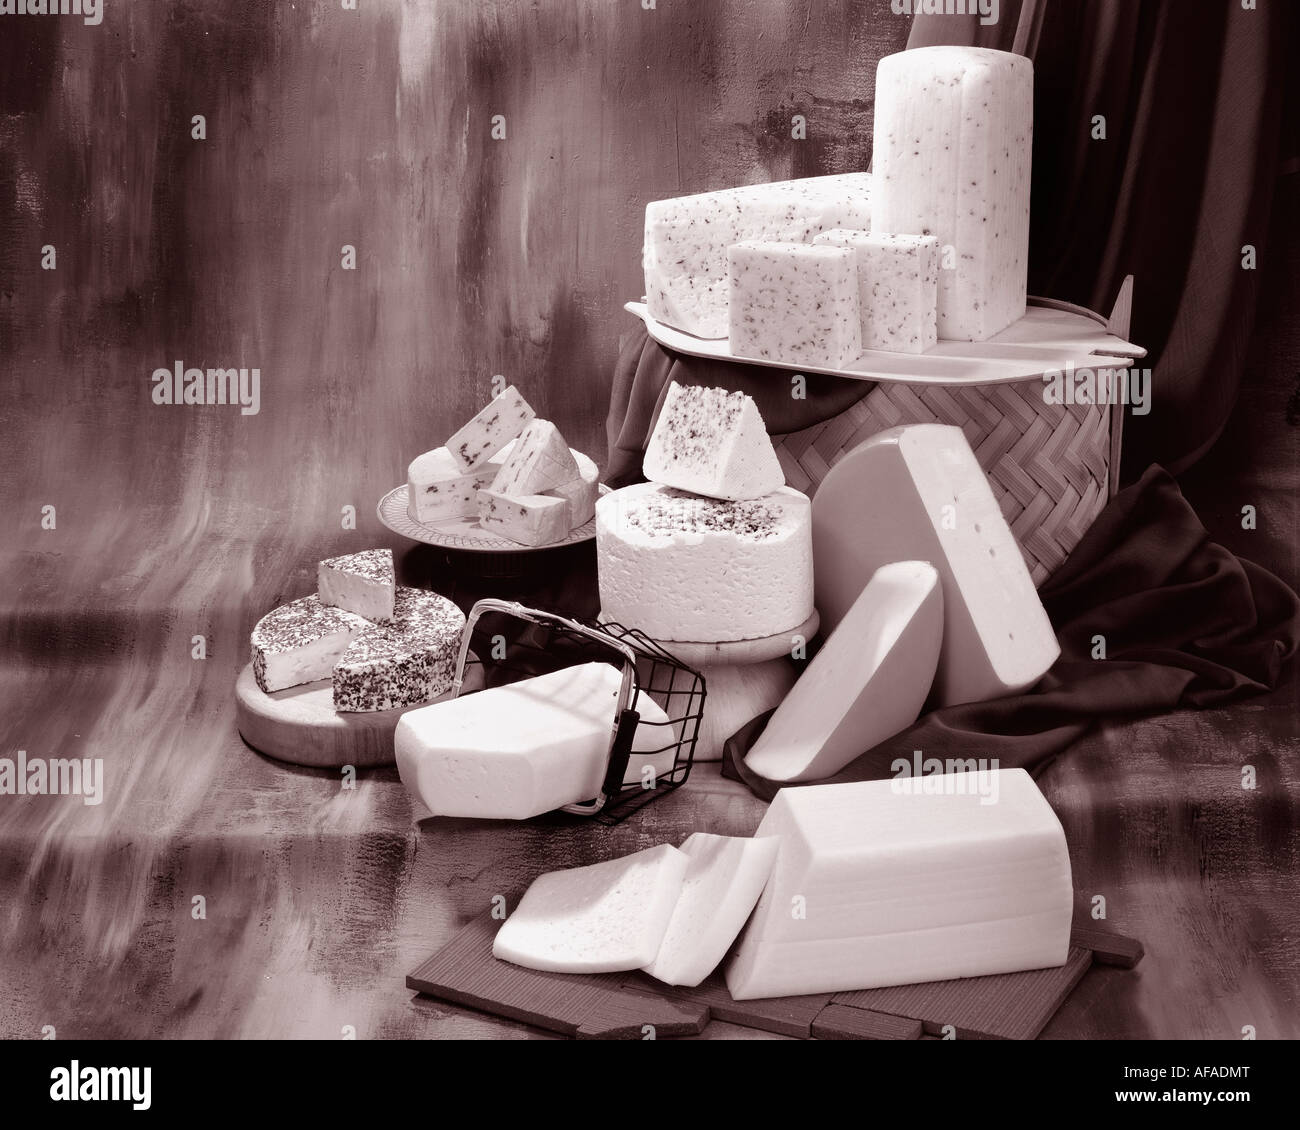 Dänischer Käse in Sepia von Gruppenfoto auf Warm getönten gesprenkelte Hintergrund. Querformat, Studio, Tischplatte. Klassisches Bild. Stockfoto